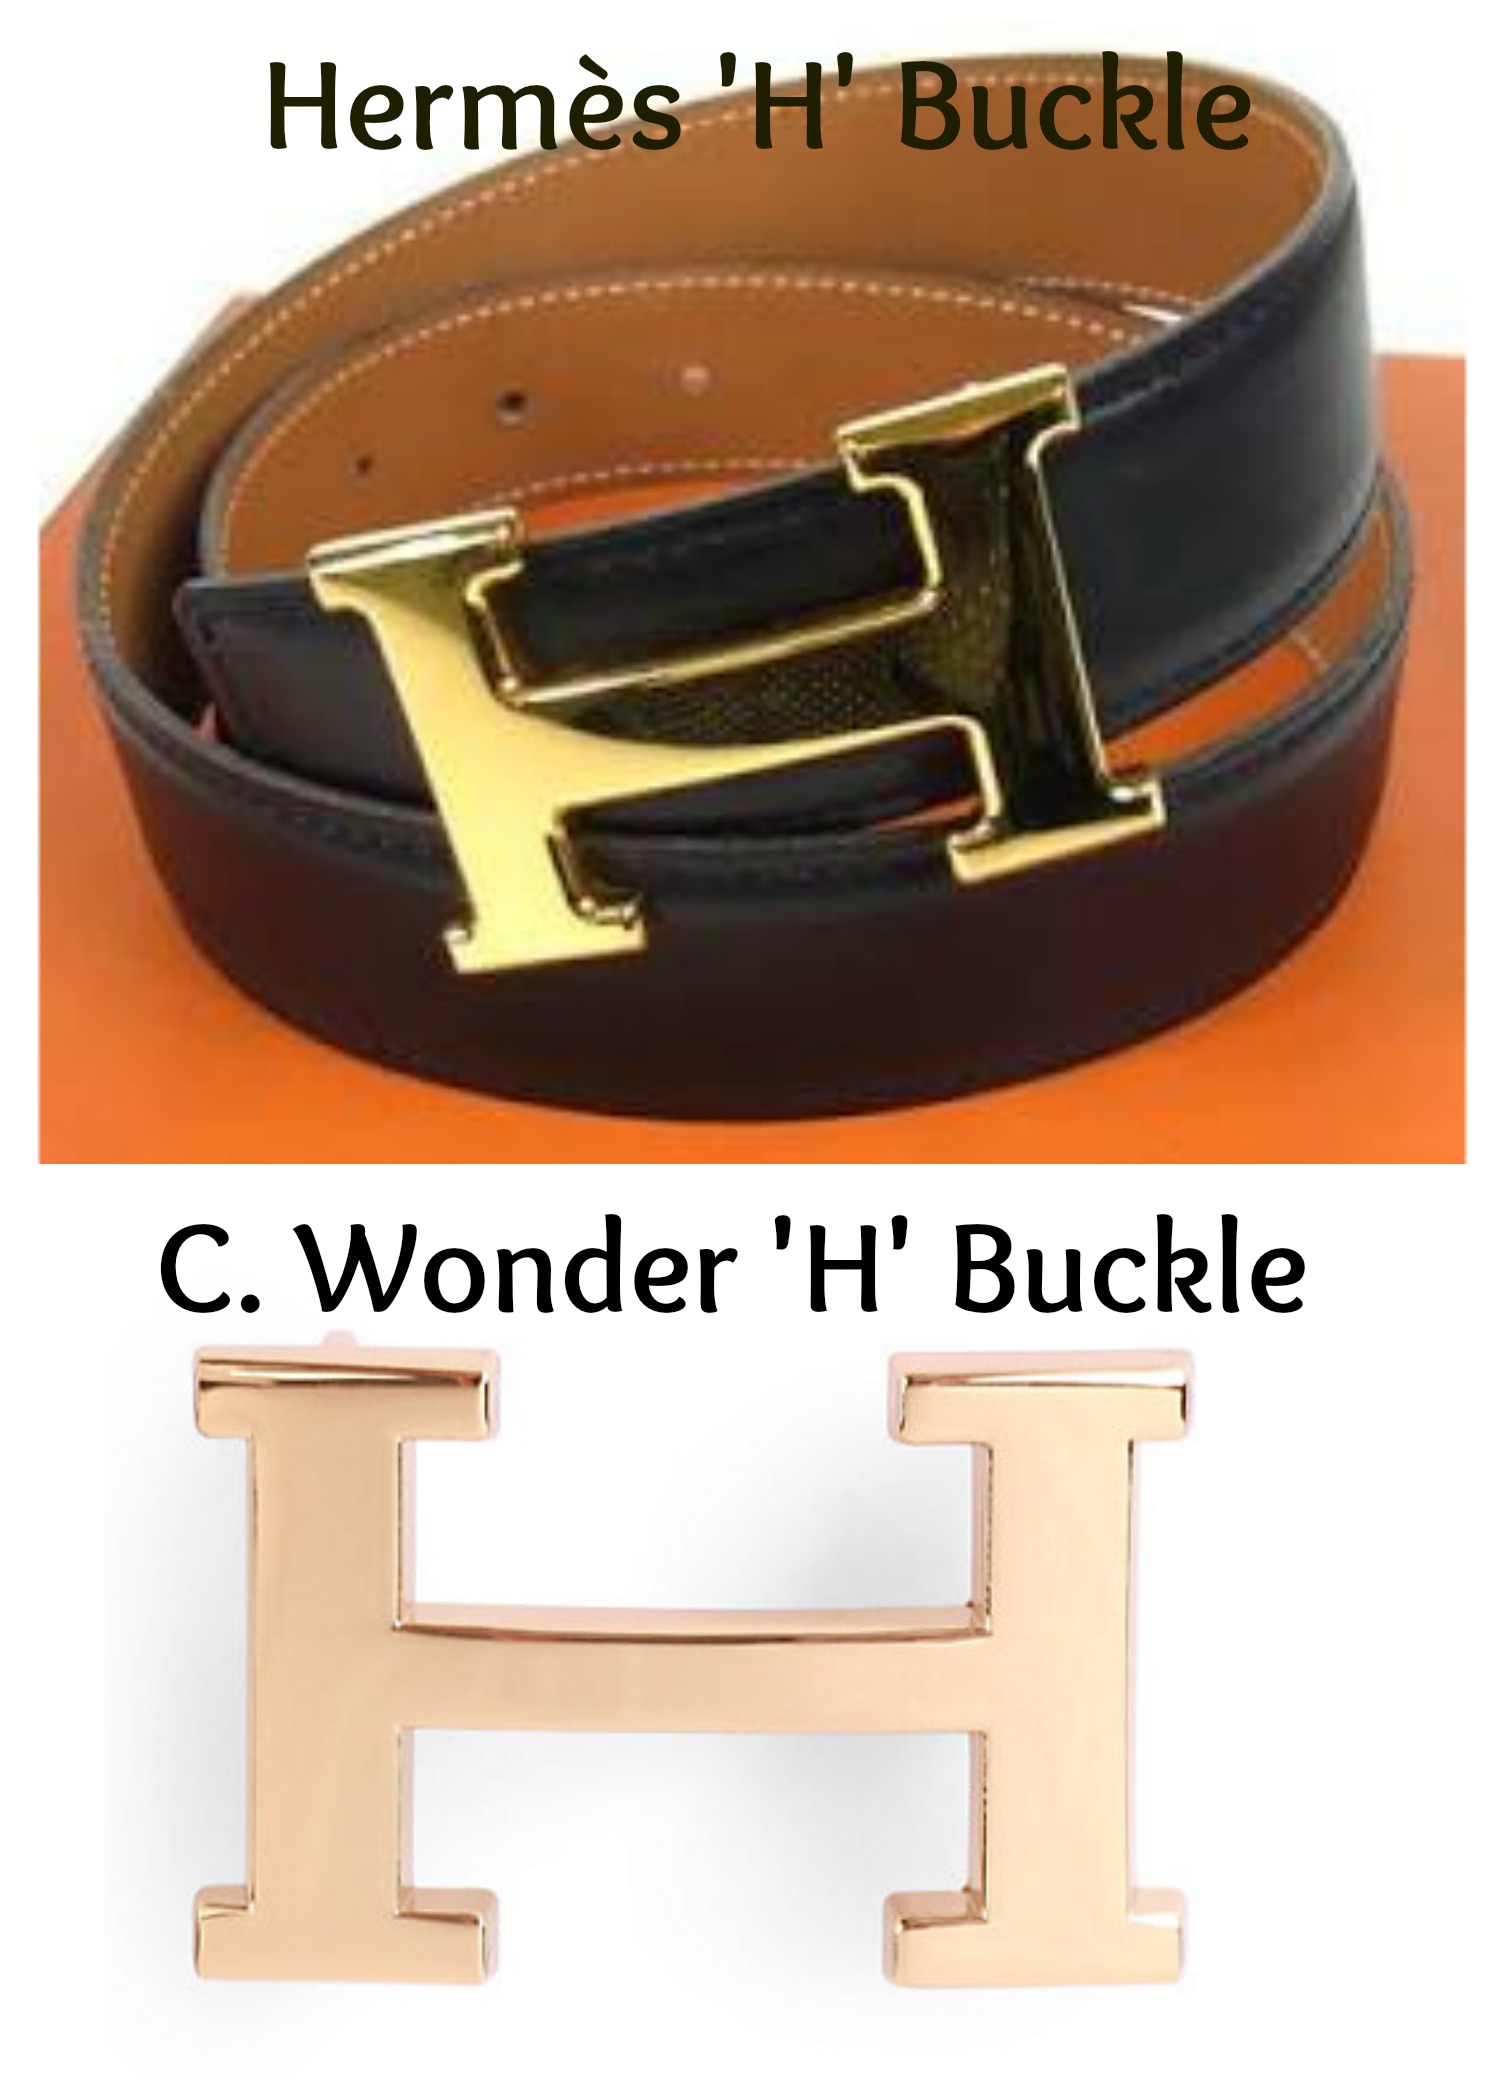 Hermes H Belt: Is It Worth It? - Luxury Belt Review